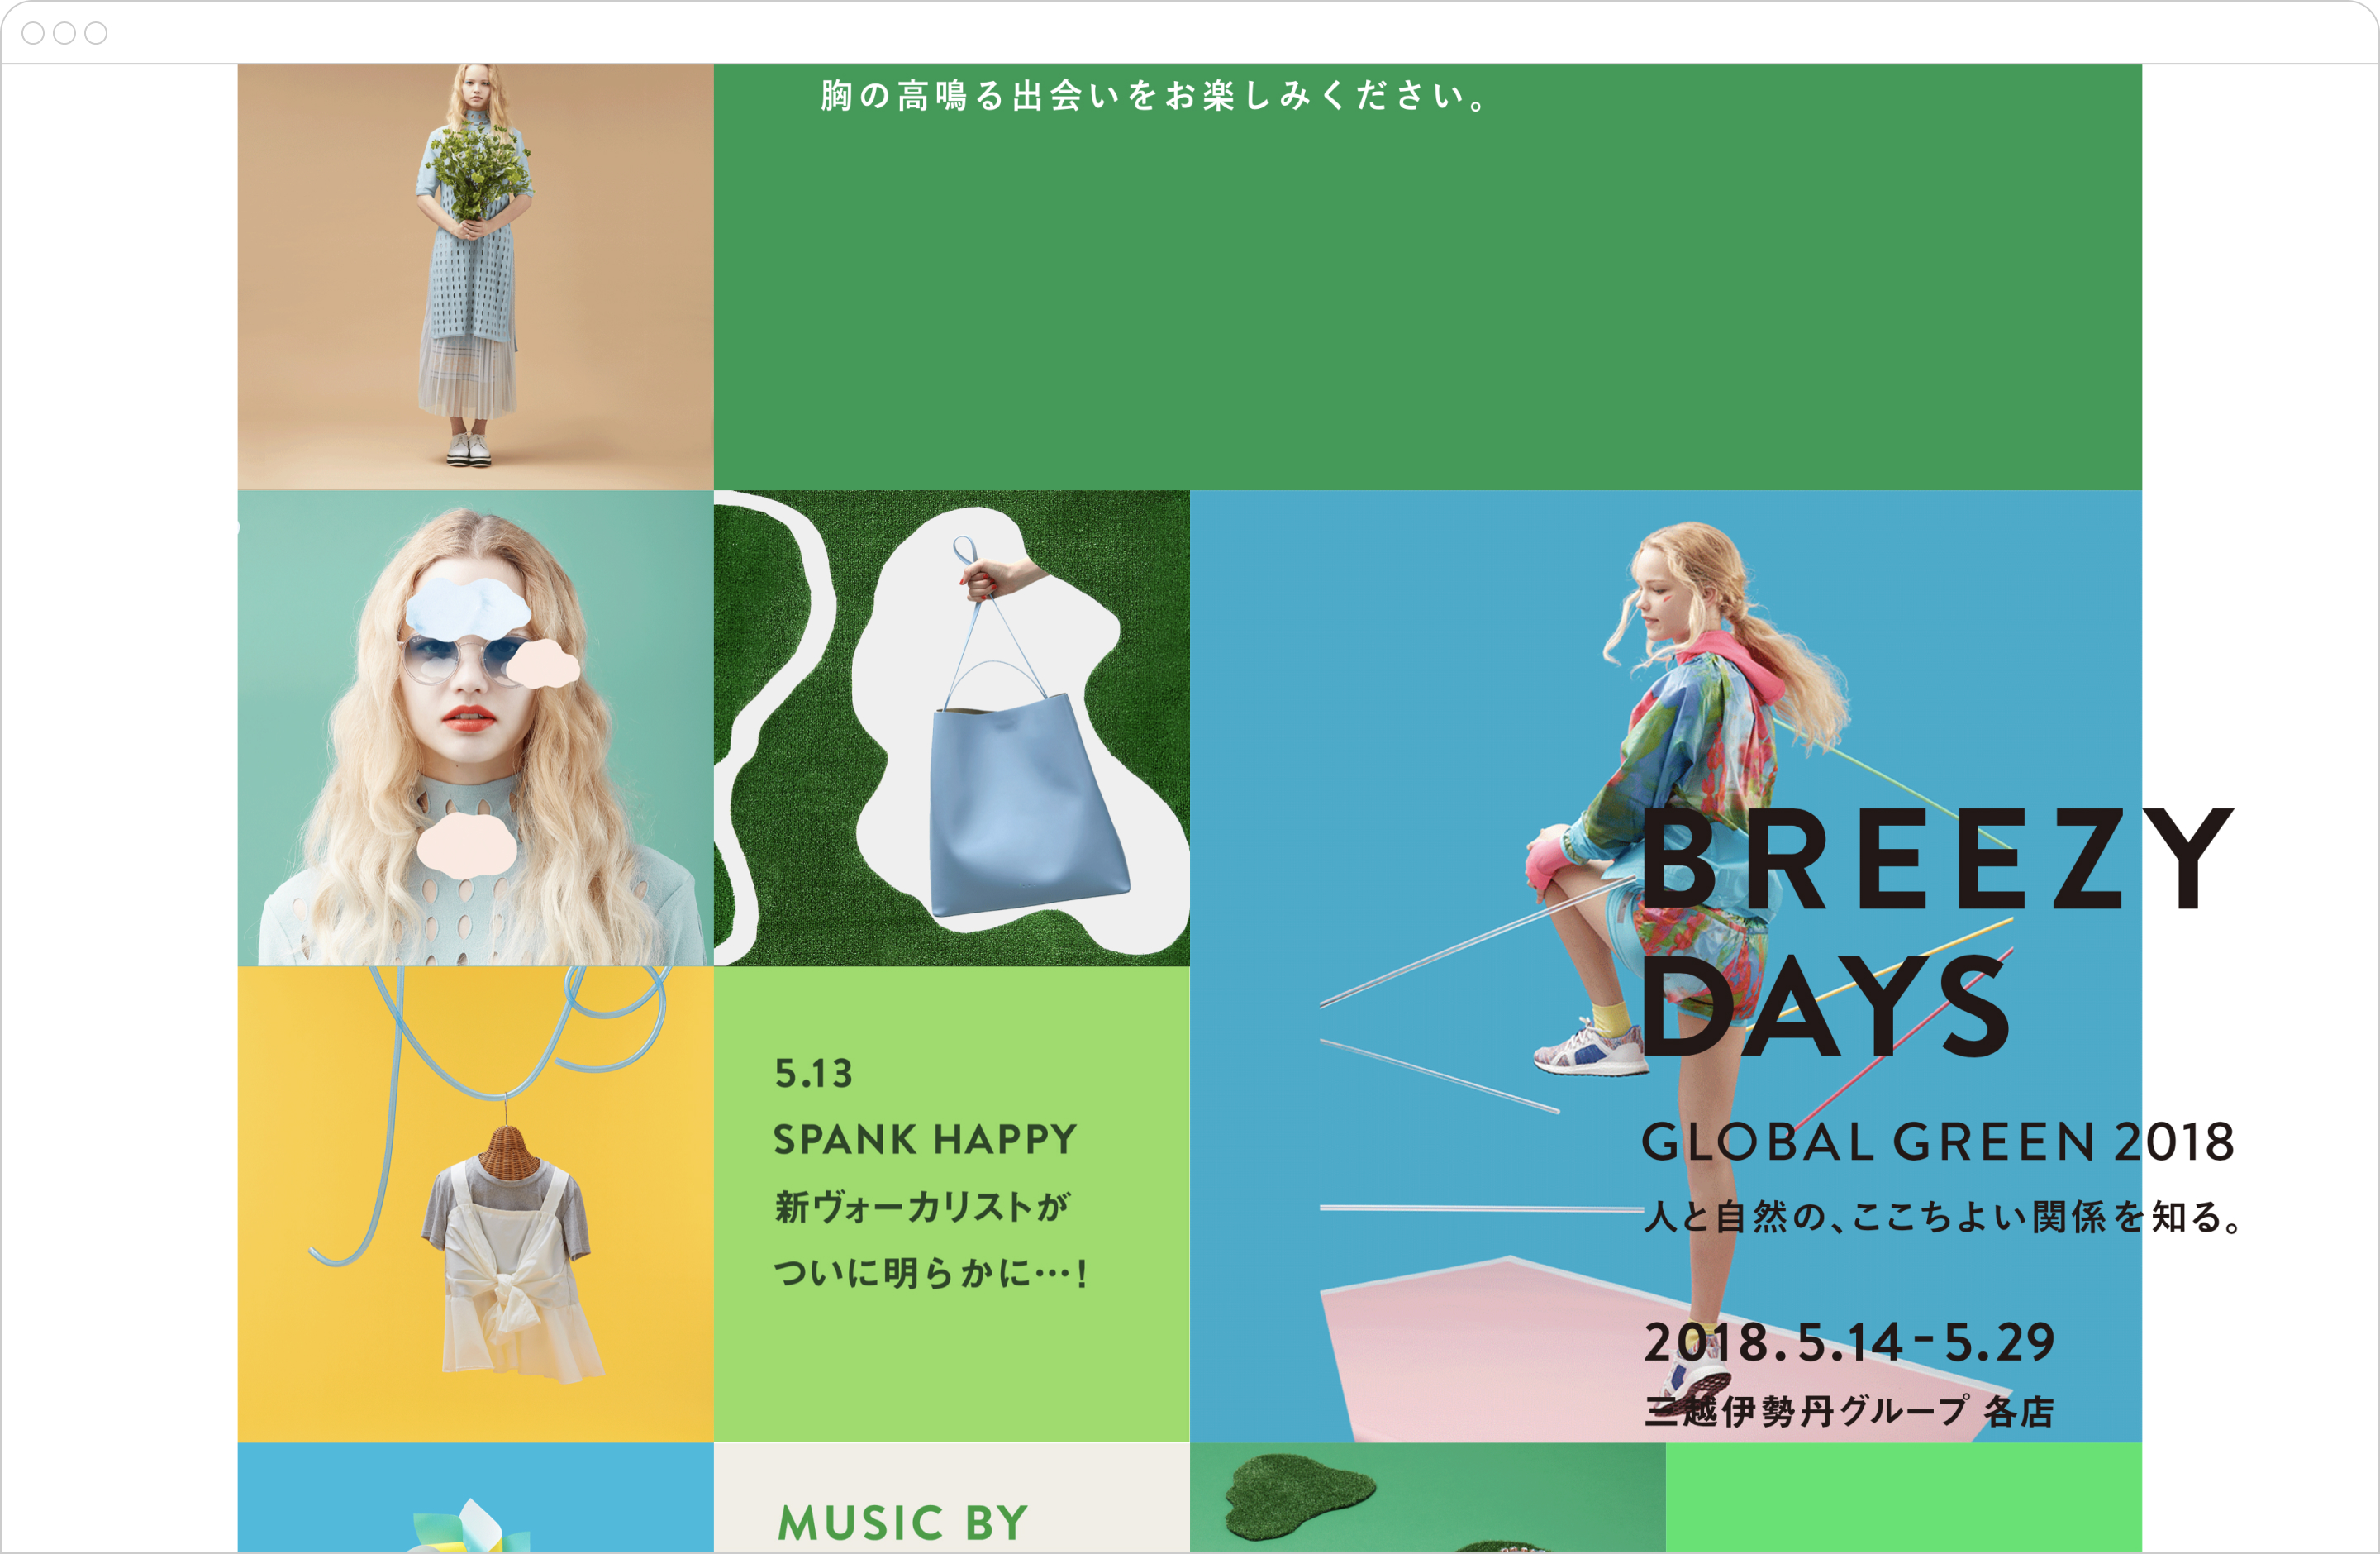 伊勢丹GLOBAL GREENキャンペーン2018のトップページ、スクロールした状態